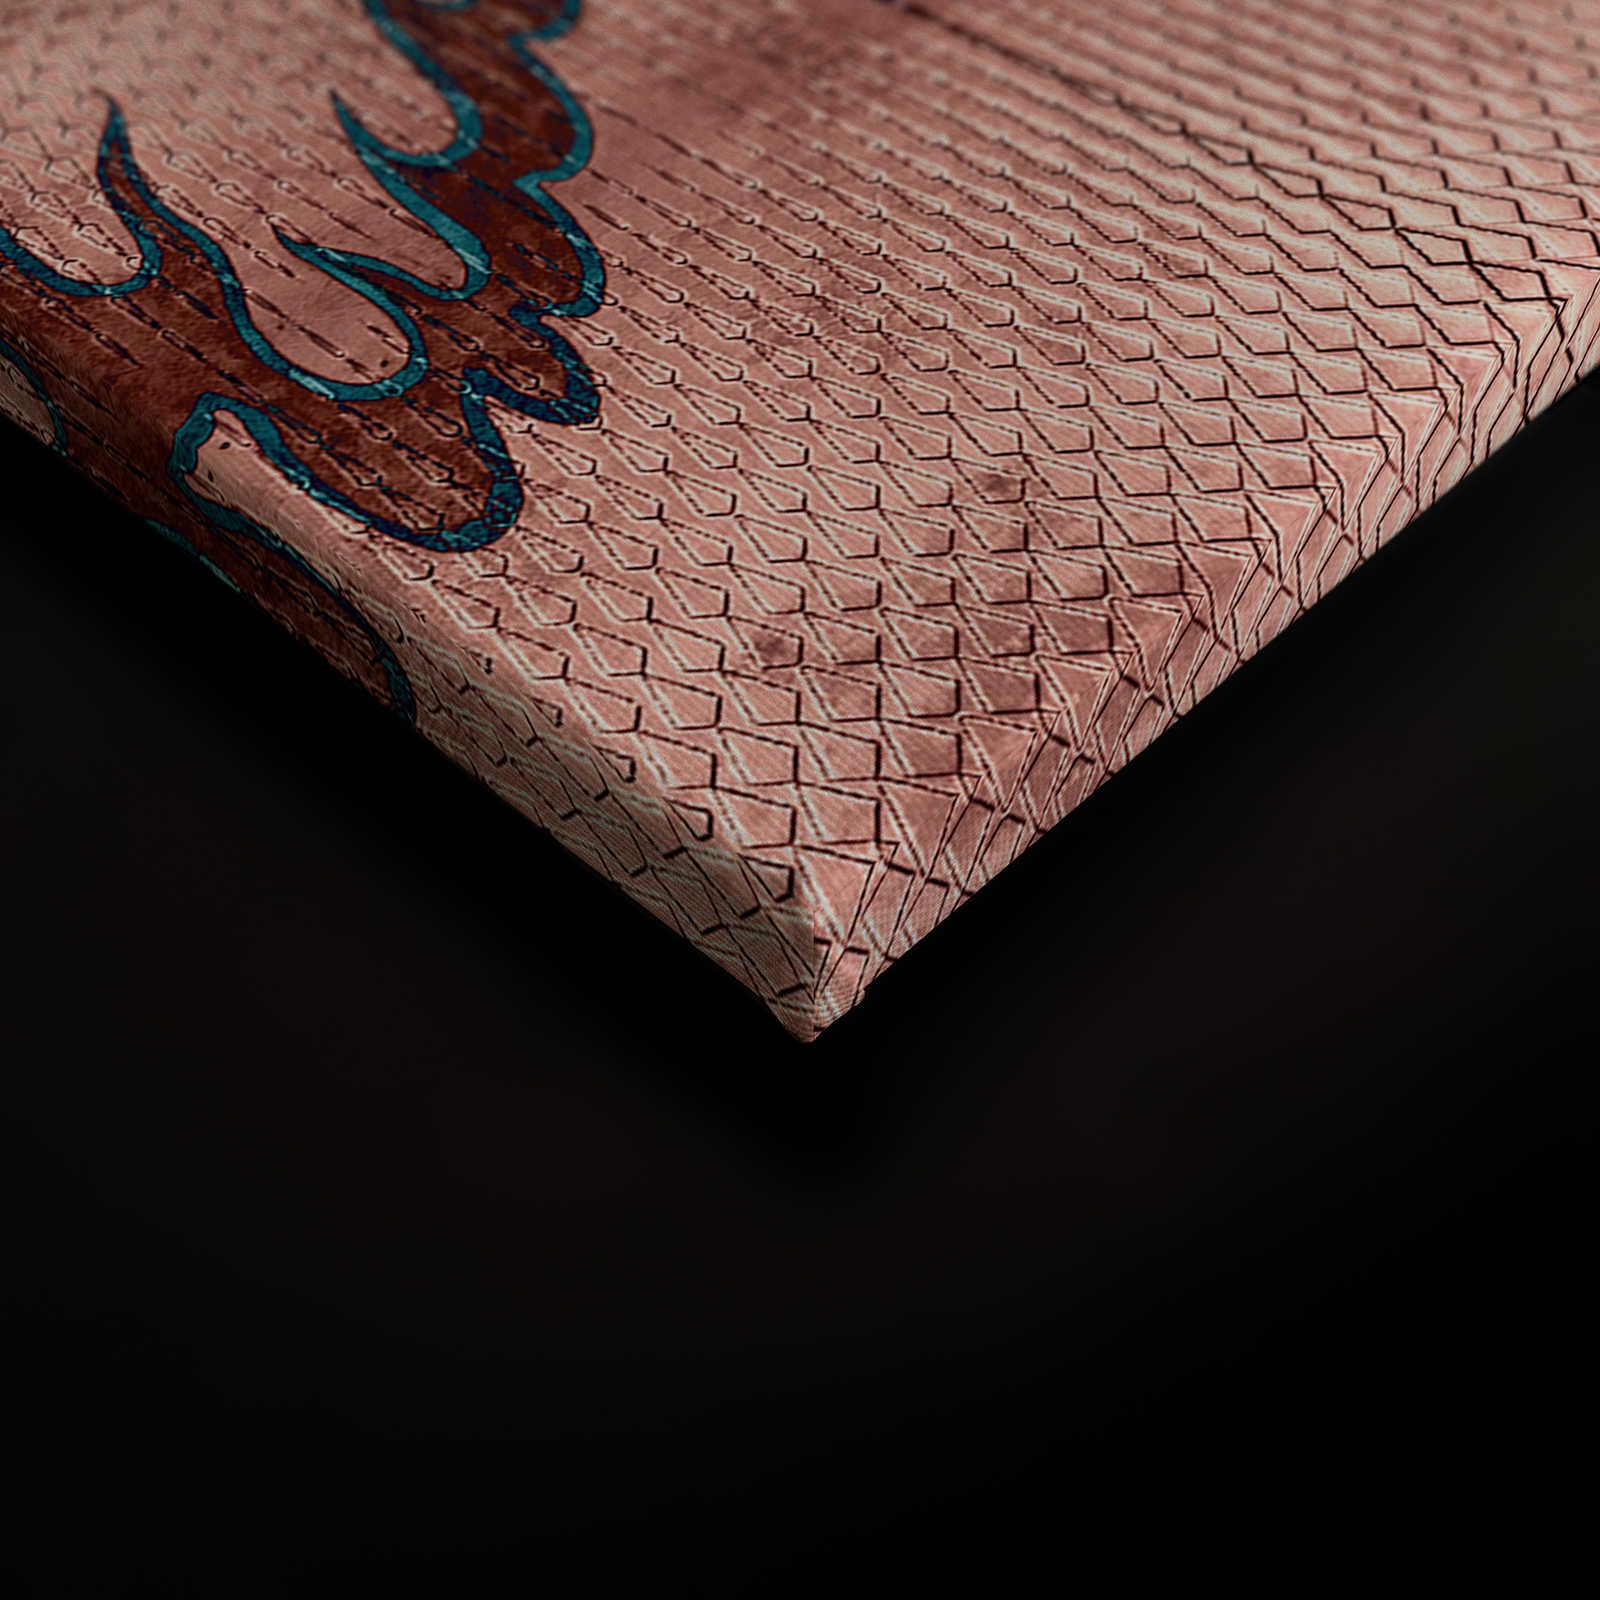             Shenzen 1 - Leinwandbild Drache Asian Syle mit Metallic Farben – 0,90 m x 0,60 m
        